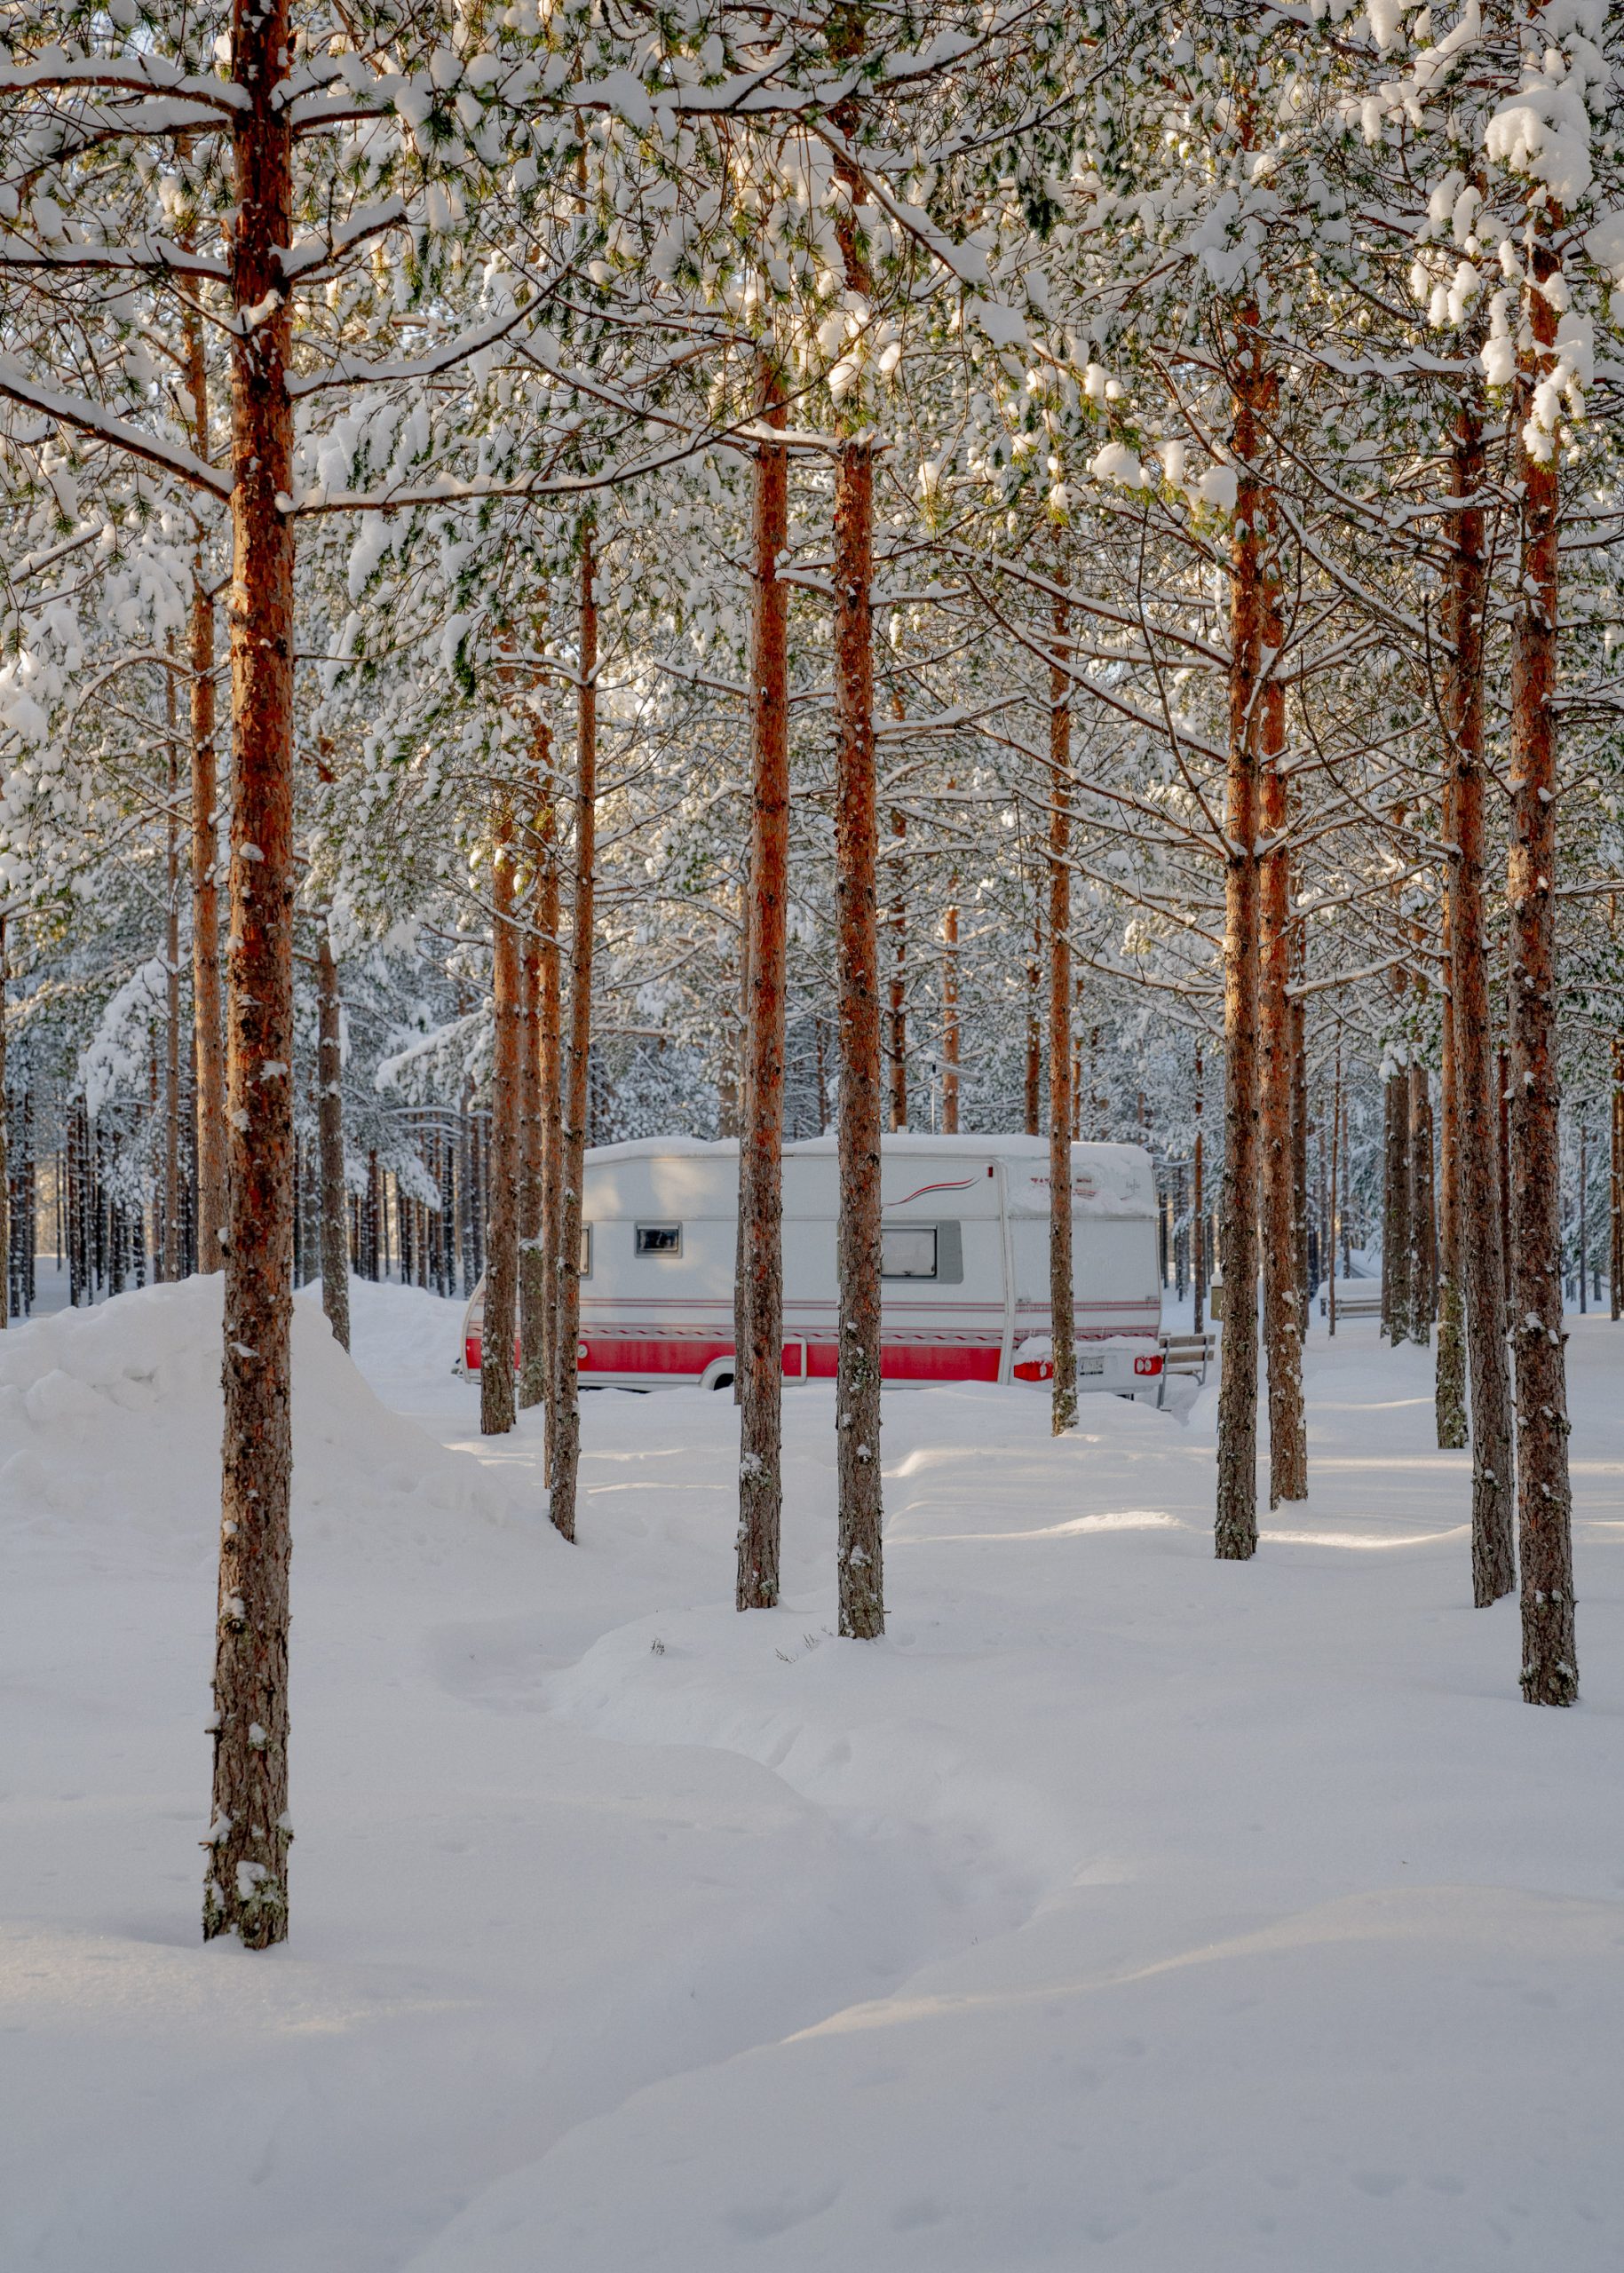 Caravan in the woods in winter.